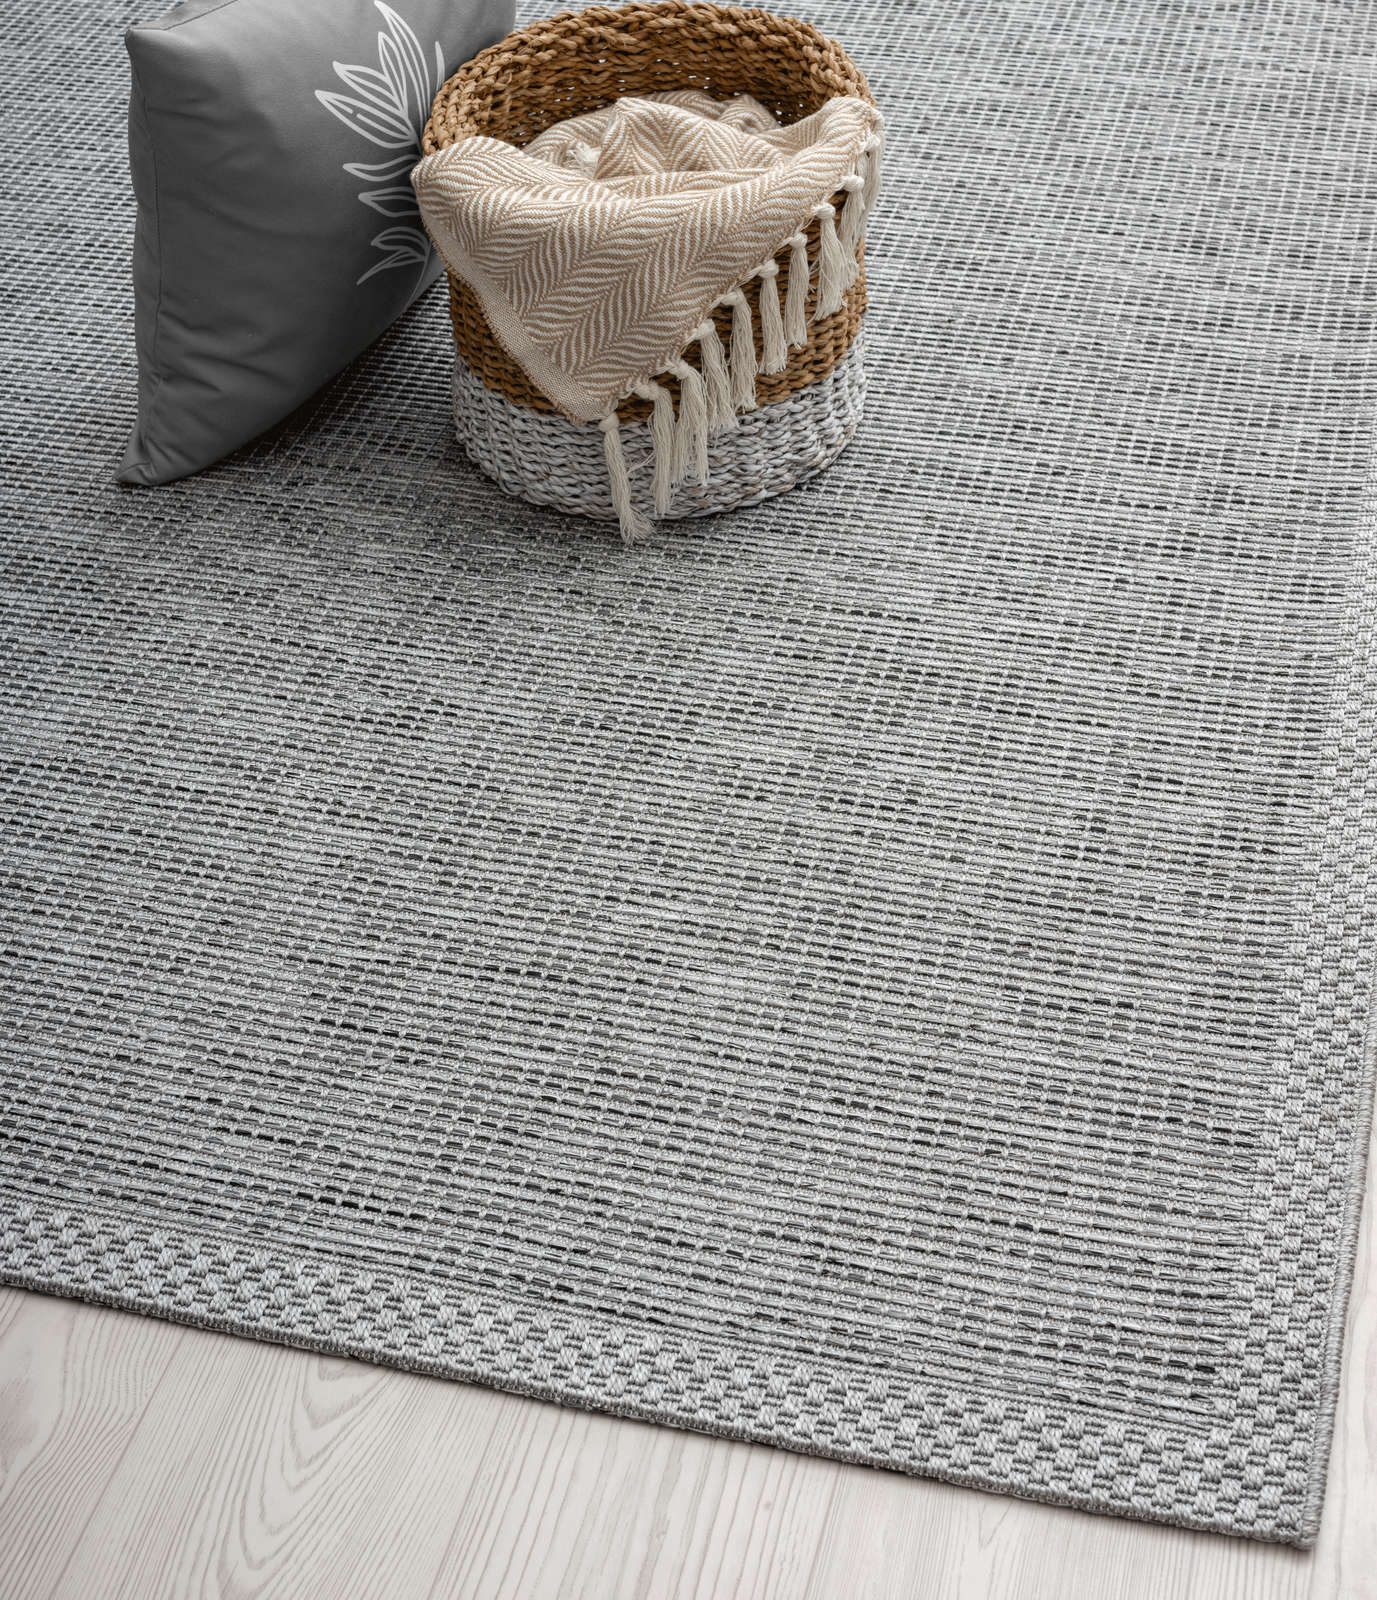             Eenvoudig vloerkleed voor buiten in grijs - 150 x 80 cm
        